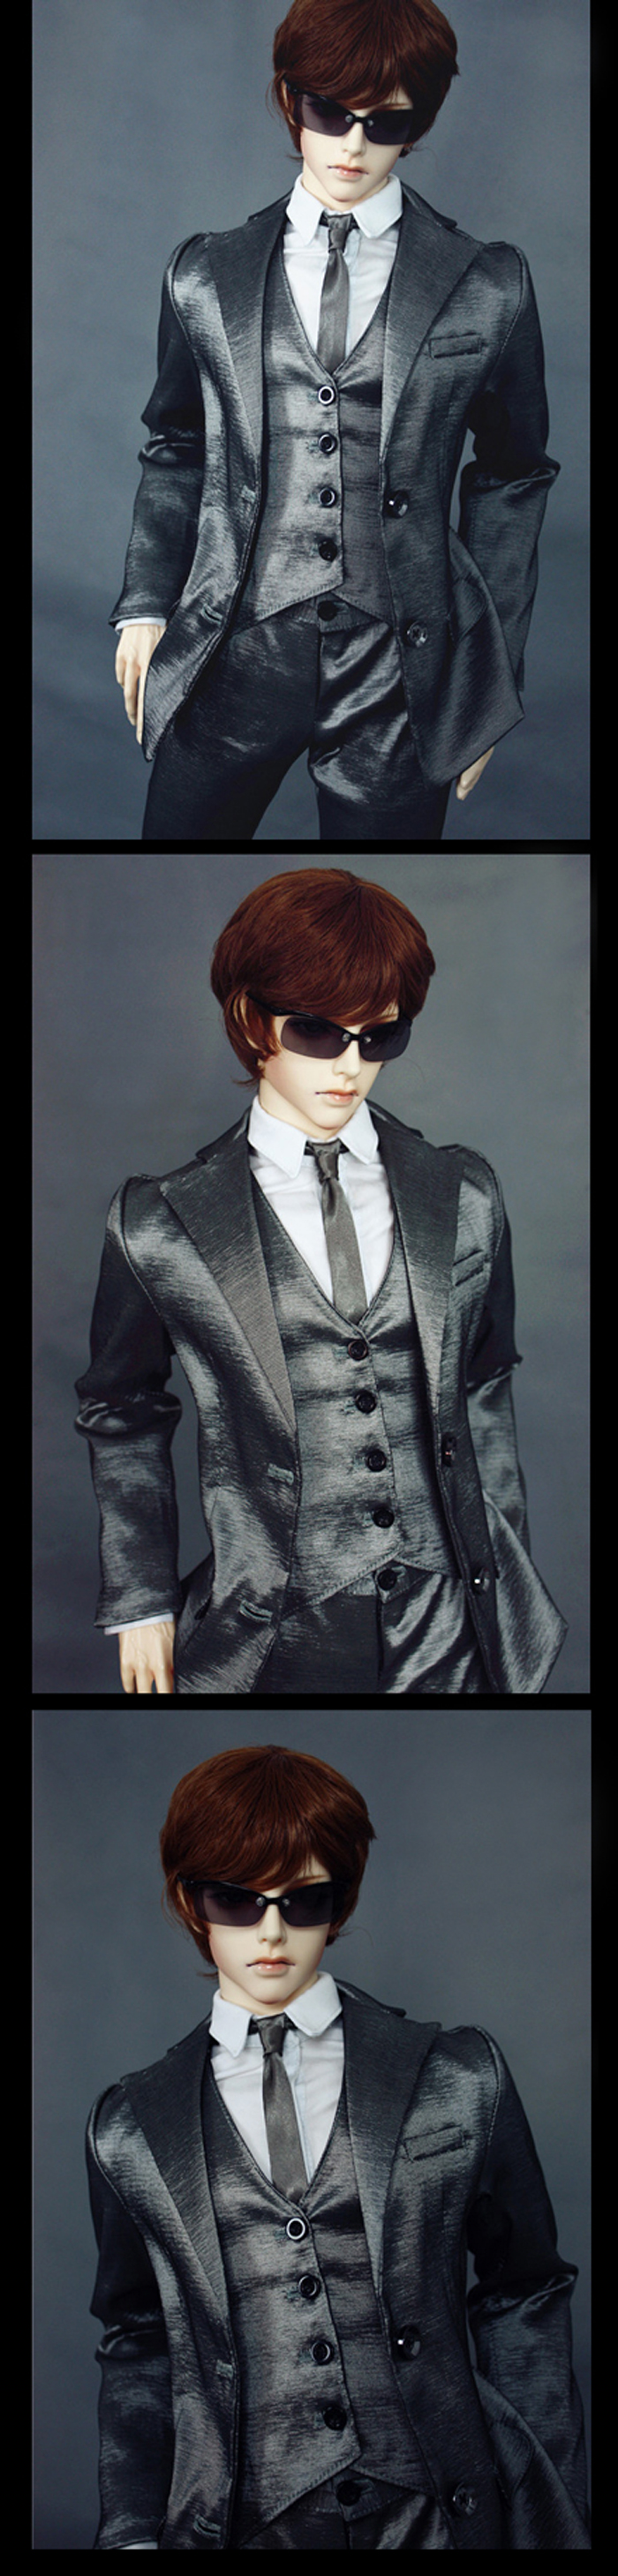 ドール衣装セット SOOM-ID/70cm/SD17/SD13/SD10サイズ人形用 Silver Suit for スーツセット